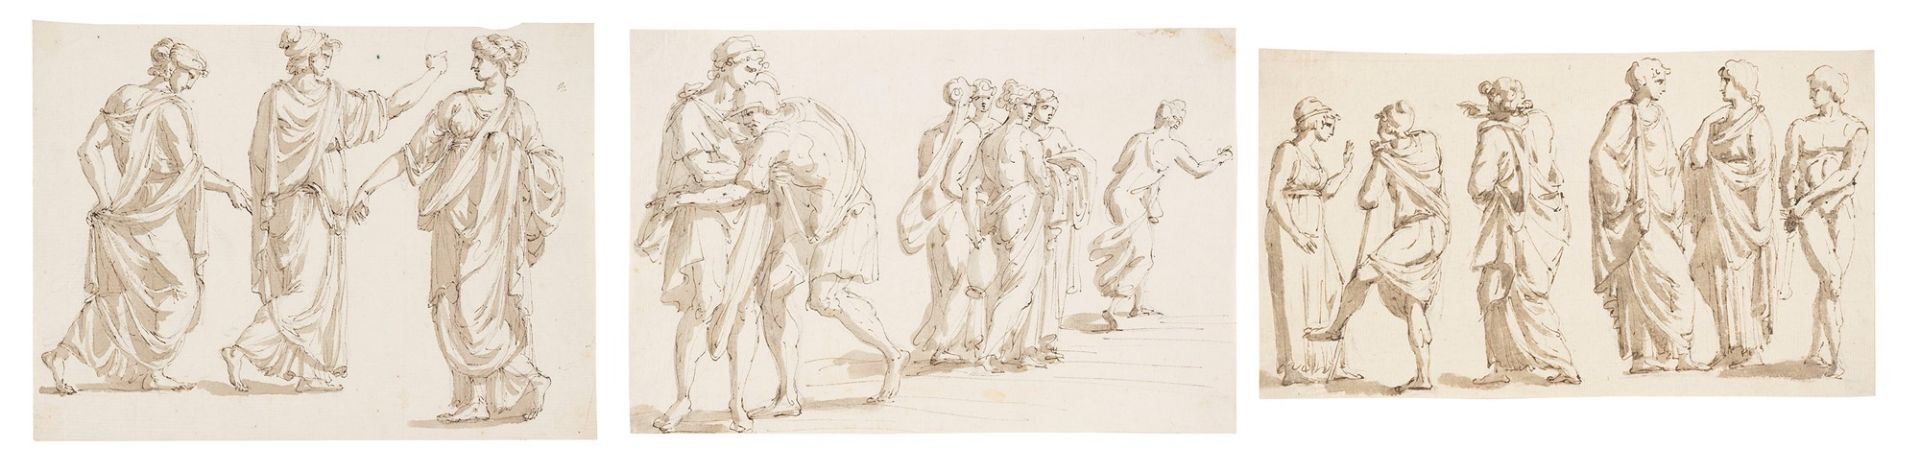 Giacomo Rossi (Bologna 1748-1817) - Studies of classical figures